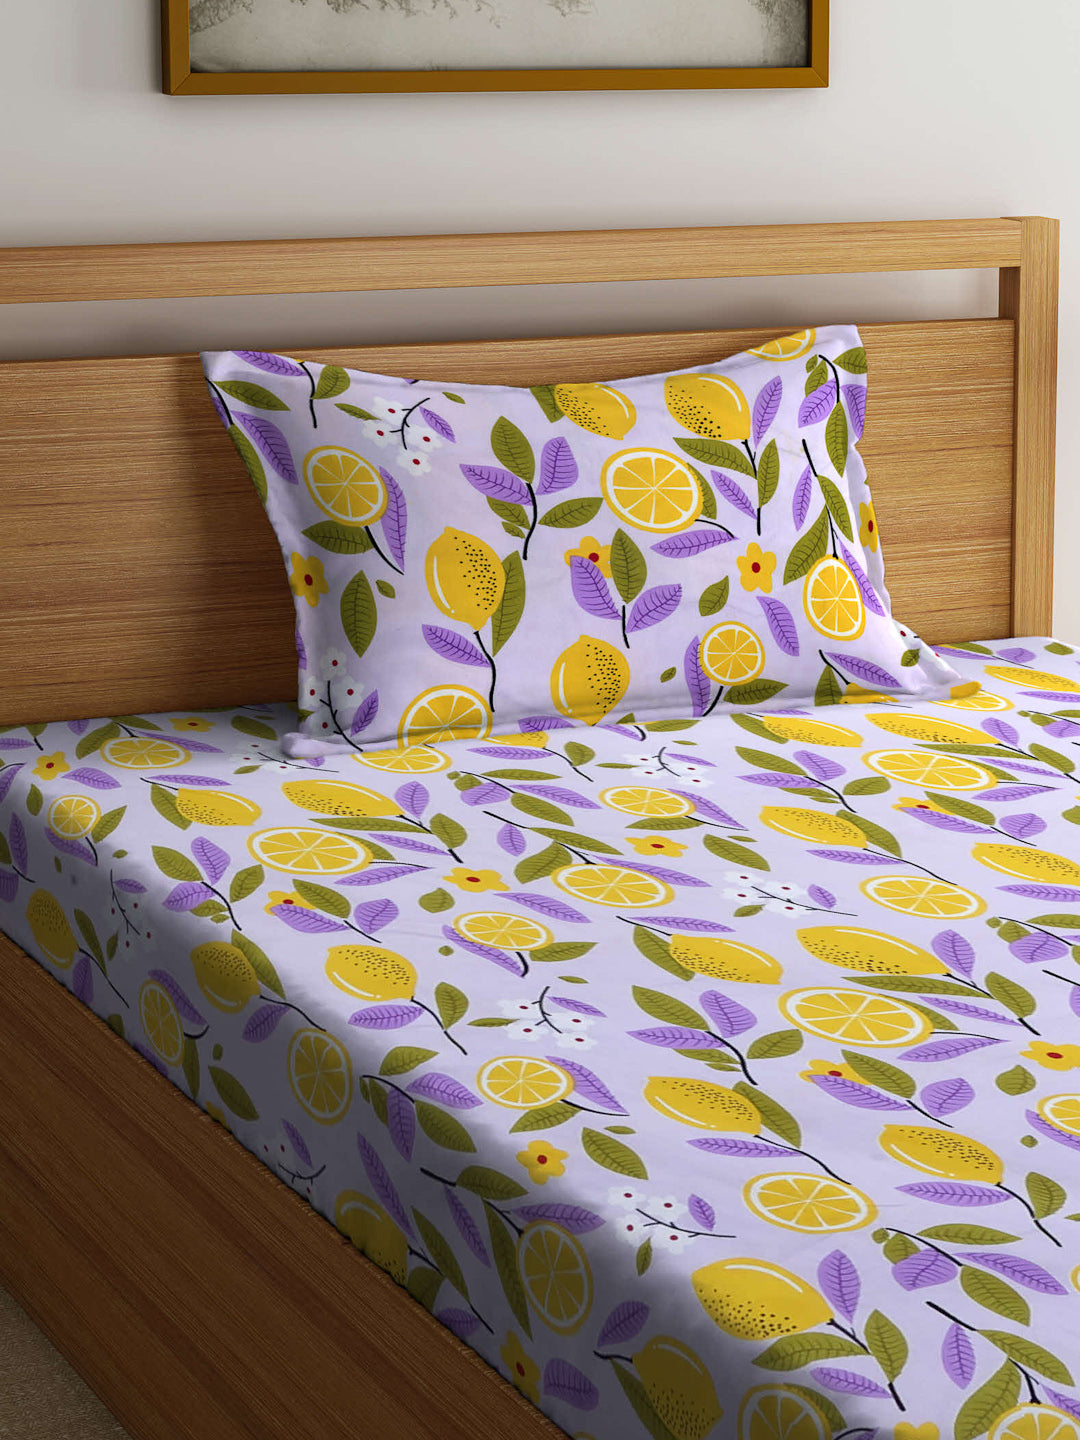 Arrabi Purple Floral TC Cotton Blend Single Size Bedsheet with 1 Pillow Cover (215 x 150 cm)